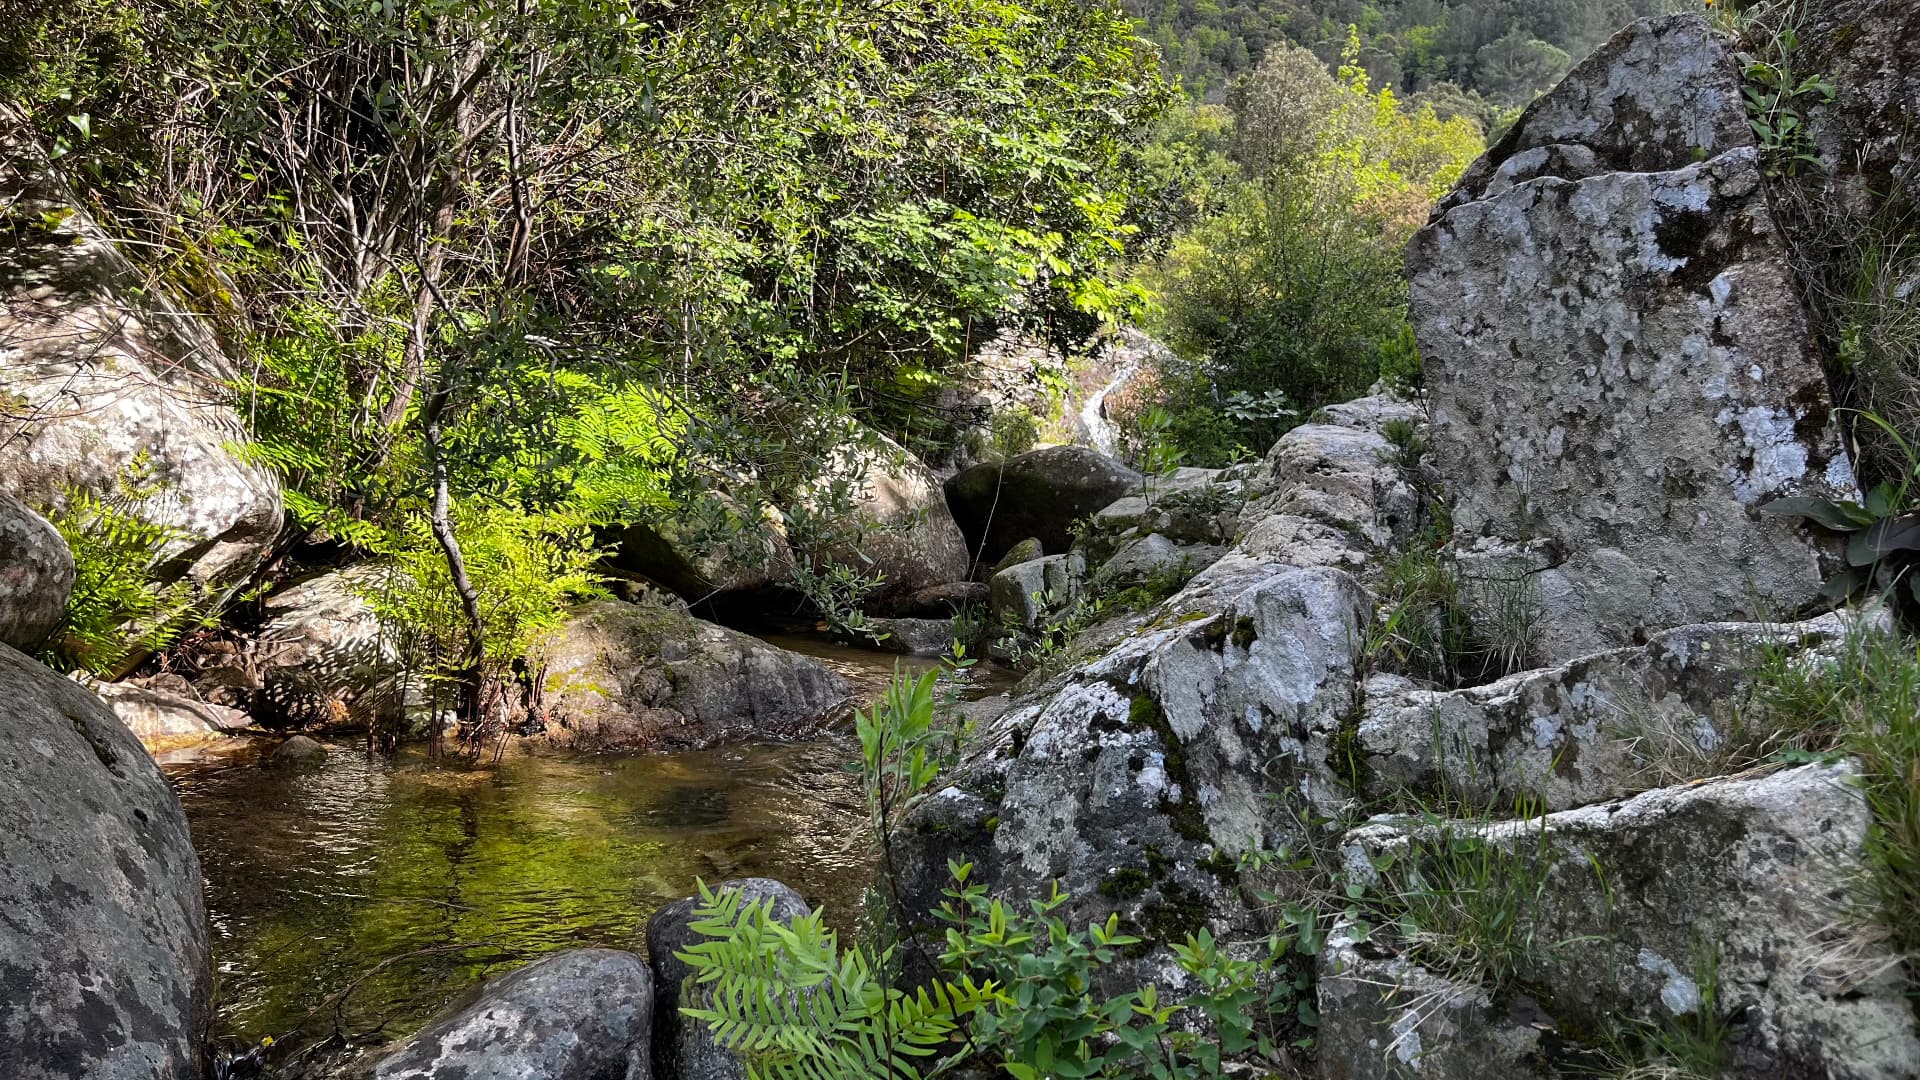 un fiume che scorre tra la vegetazione e le rocce di granito del monte Limbara